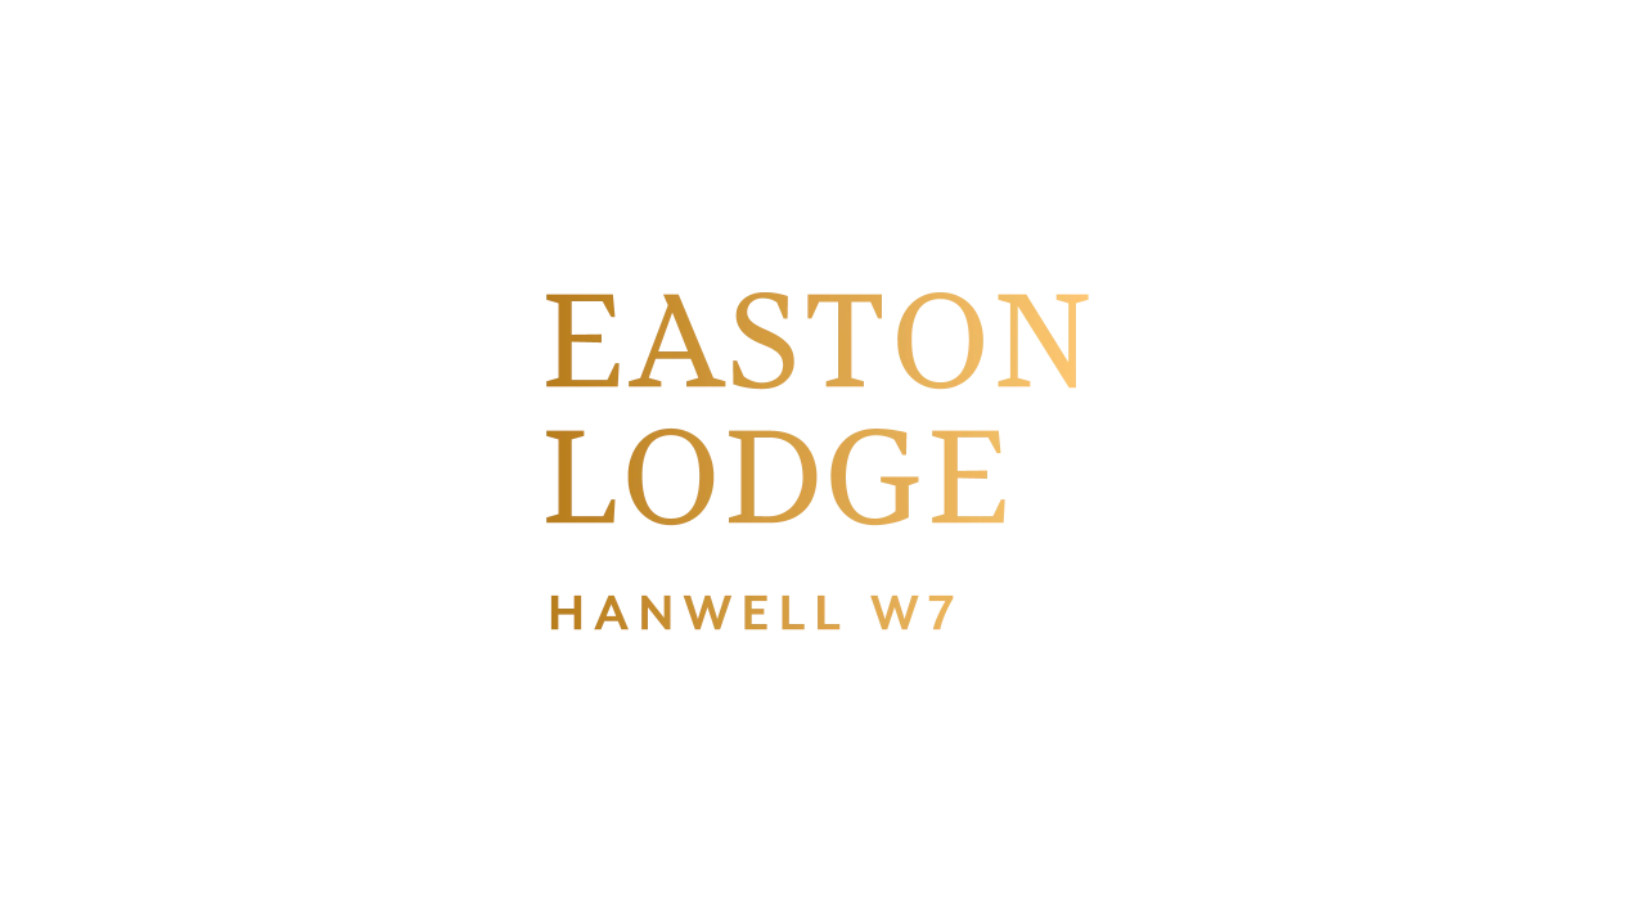 Logo of the Easton Lodge development by Mizen in Hanwell, London W7